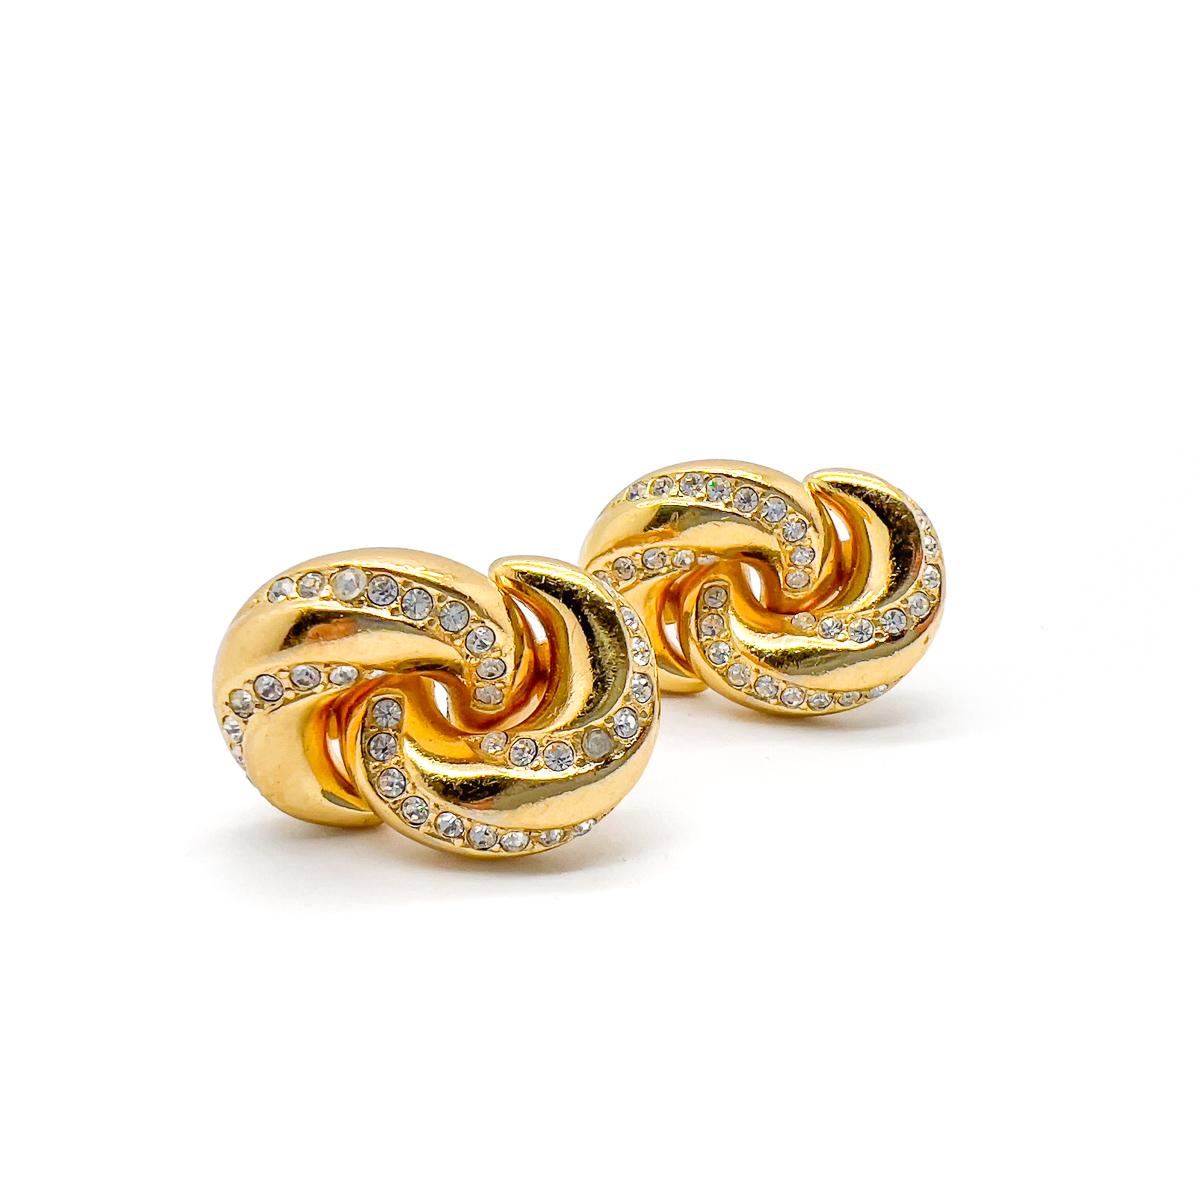 Ein Paar Vintage Christian Dior verschönert Love Knot Ohrringe. Mit verschlungenen goldenen Loops, die einen Liebesknoten darstellen. Die hochglanzpolierten und mit Steinen besetzten Oberflächen sorgen für einen perfekten Kontrast und ziehen die